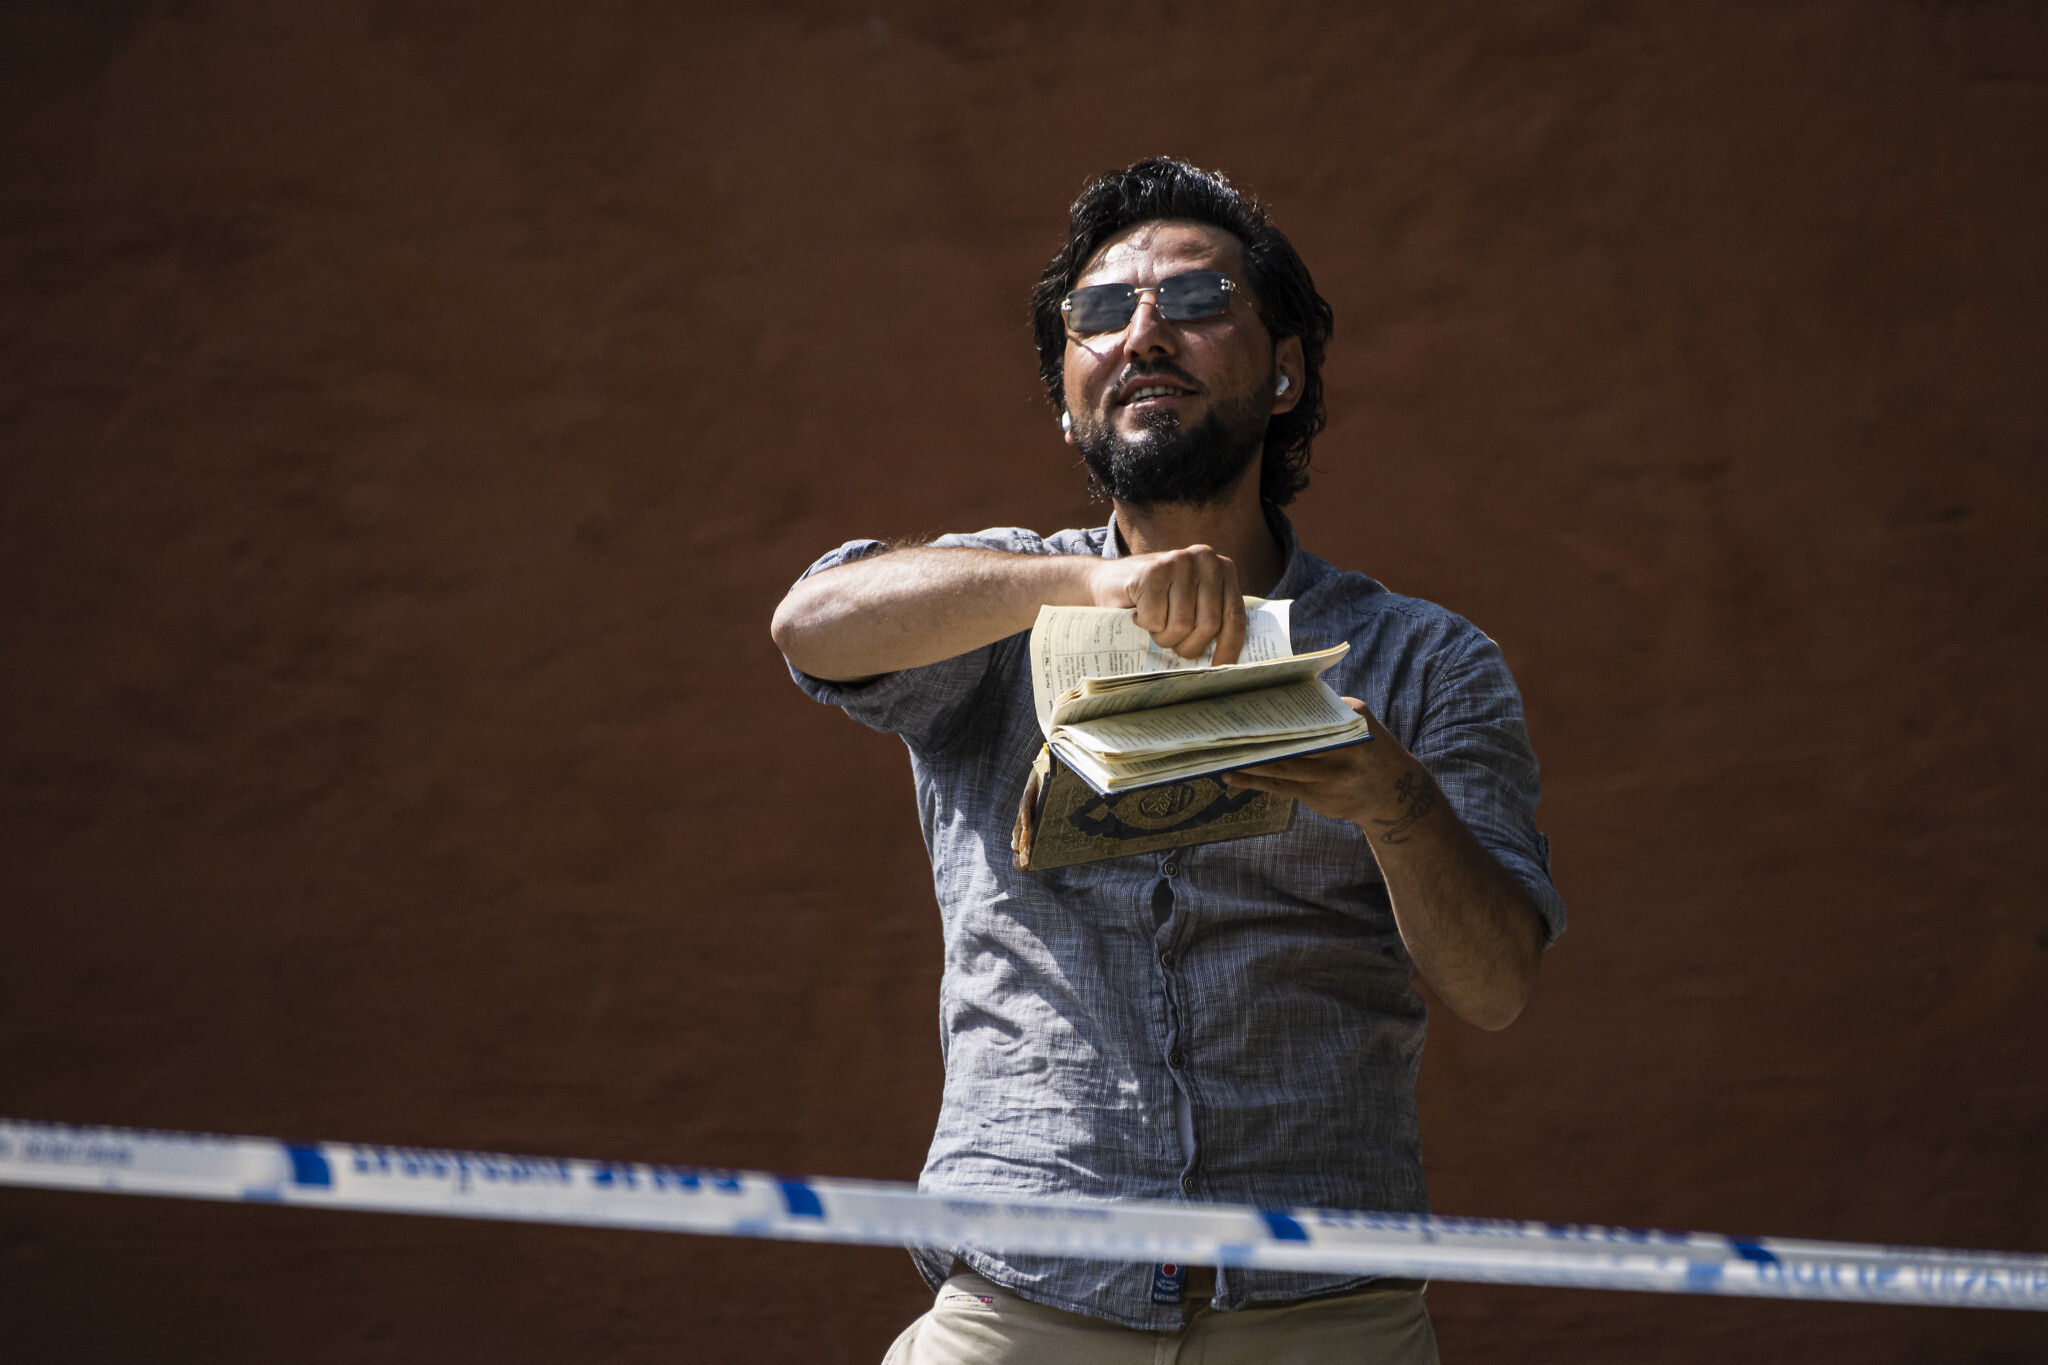 سالوان مومکا یک عراقی آسوری در استکهلم سوئد برگهایی از قران را به آتش کشید.